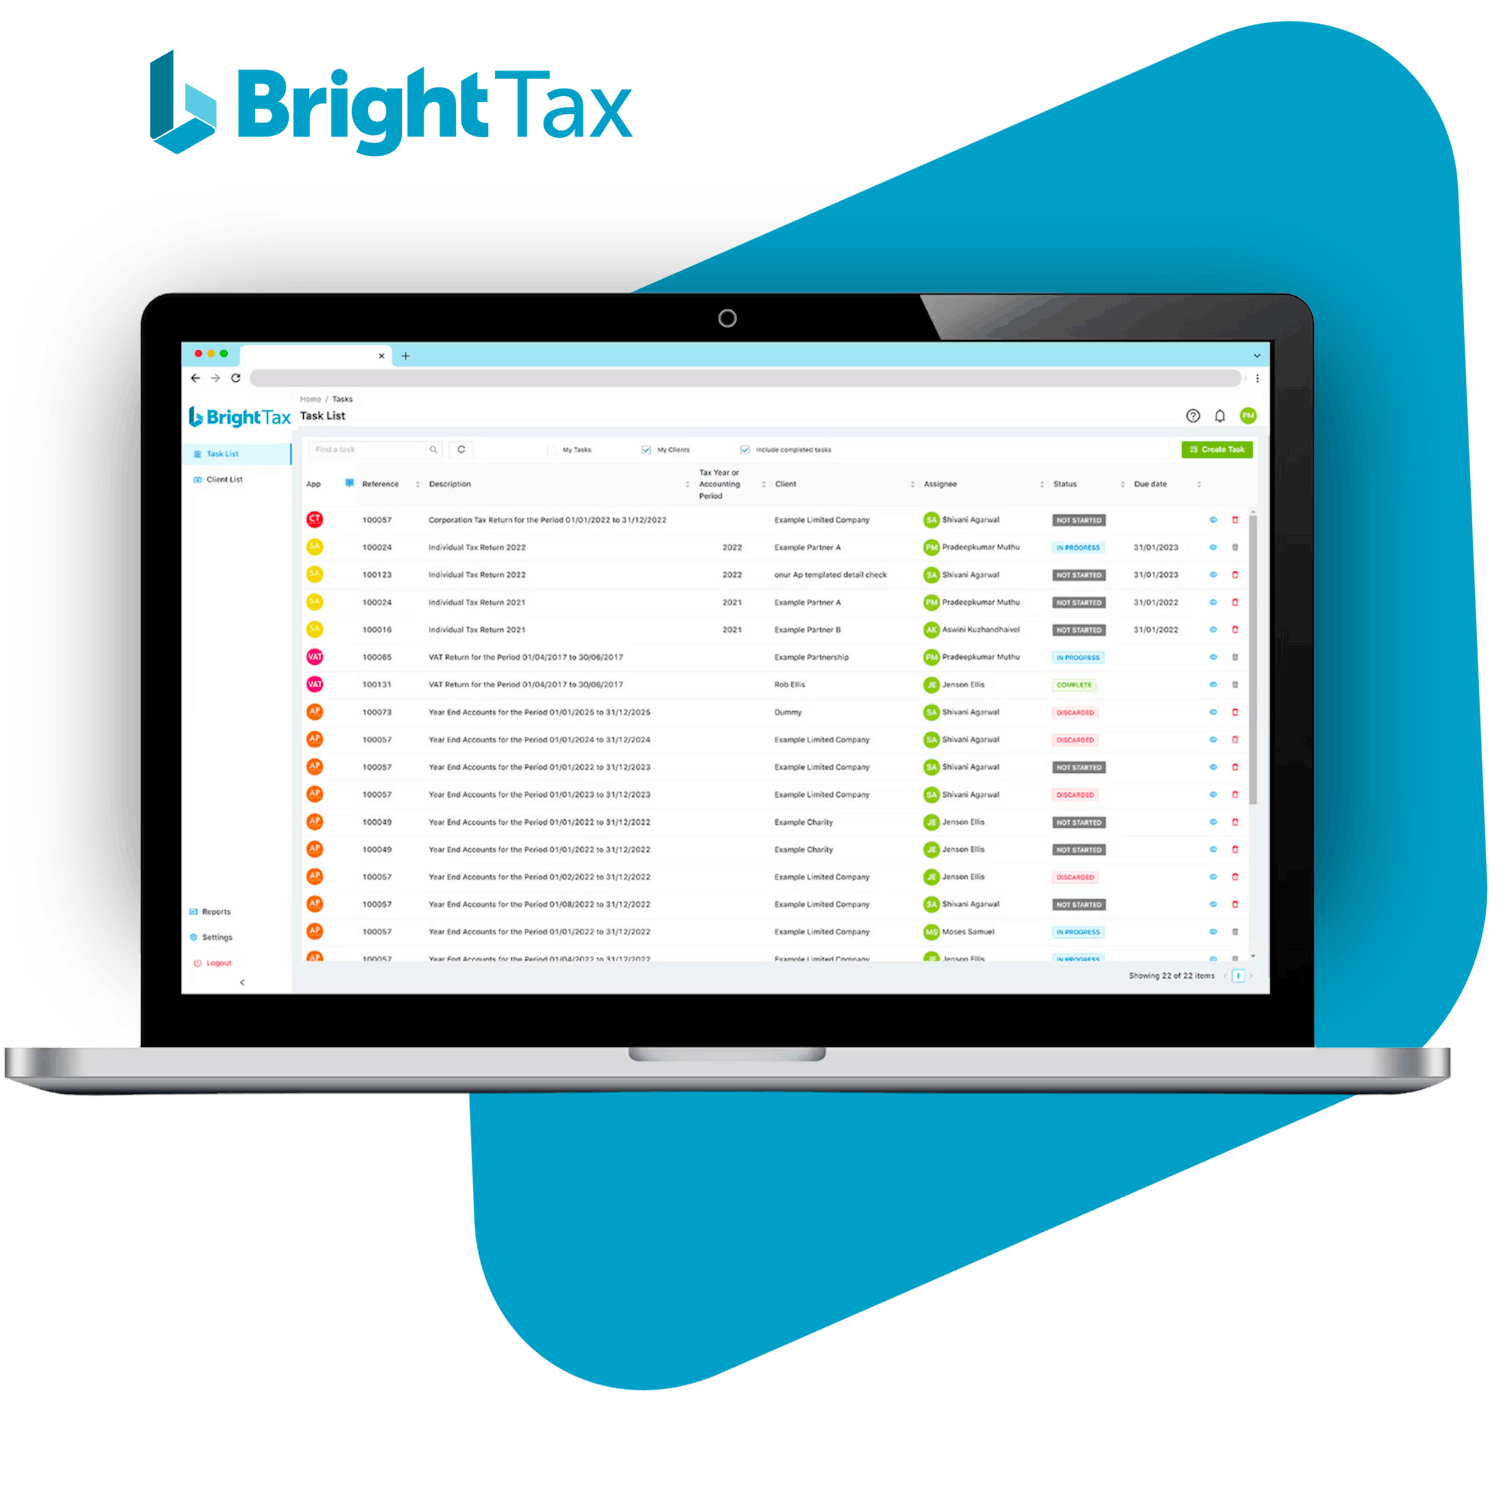 Screenshot of BrightTax tax software showing client management task list